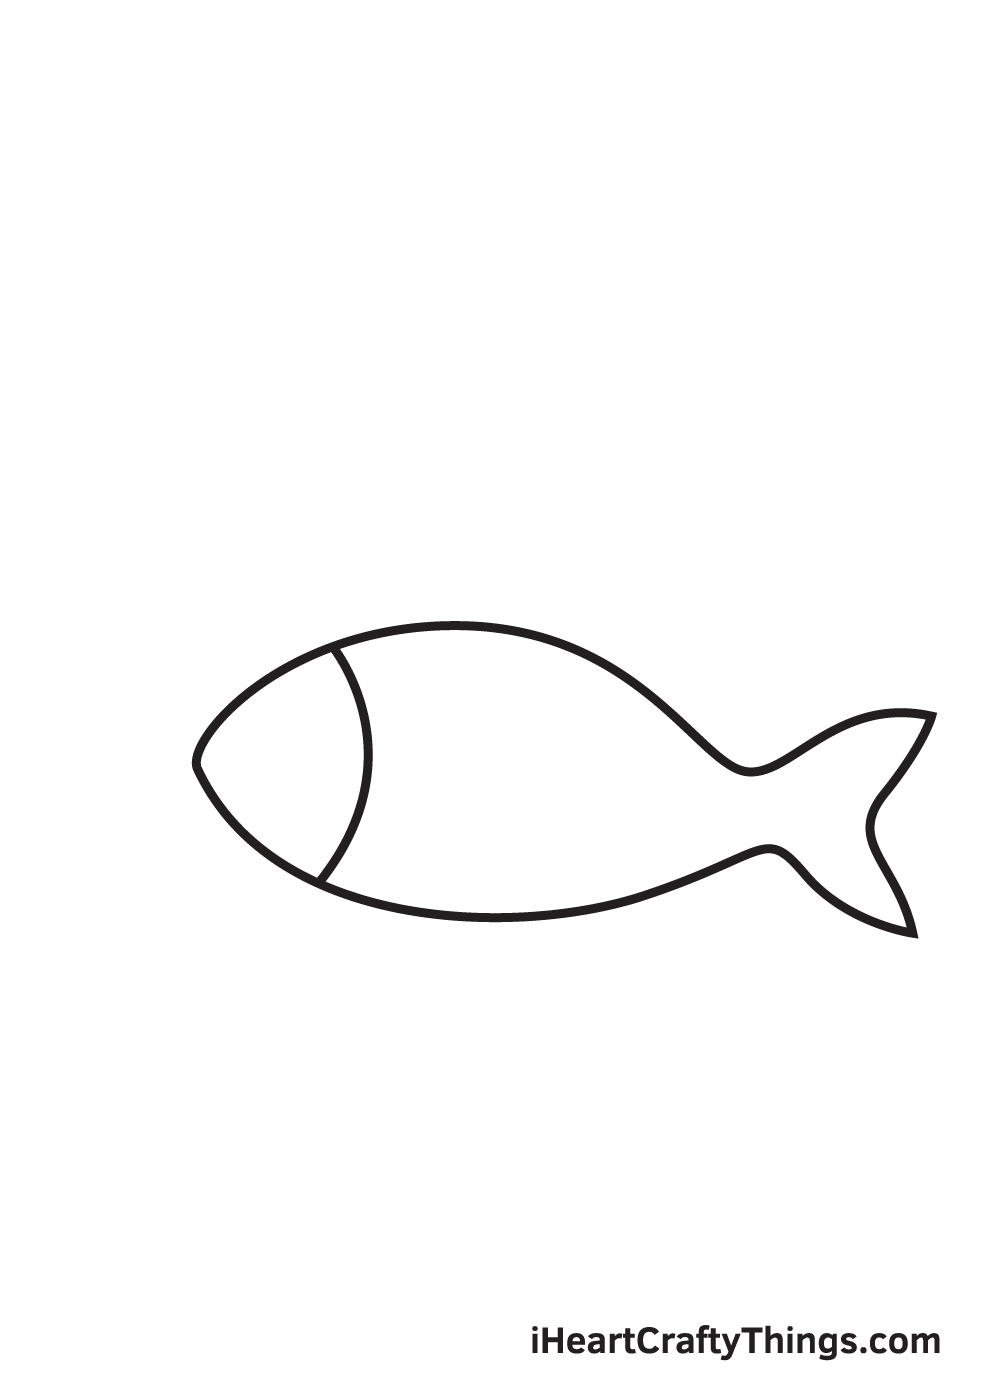 Hướng dẫn cách vẽ CON CÁ  Tô màu Con Cá  How to draw a Fish step by step   Hướng dẫn Mầm non